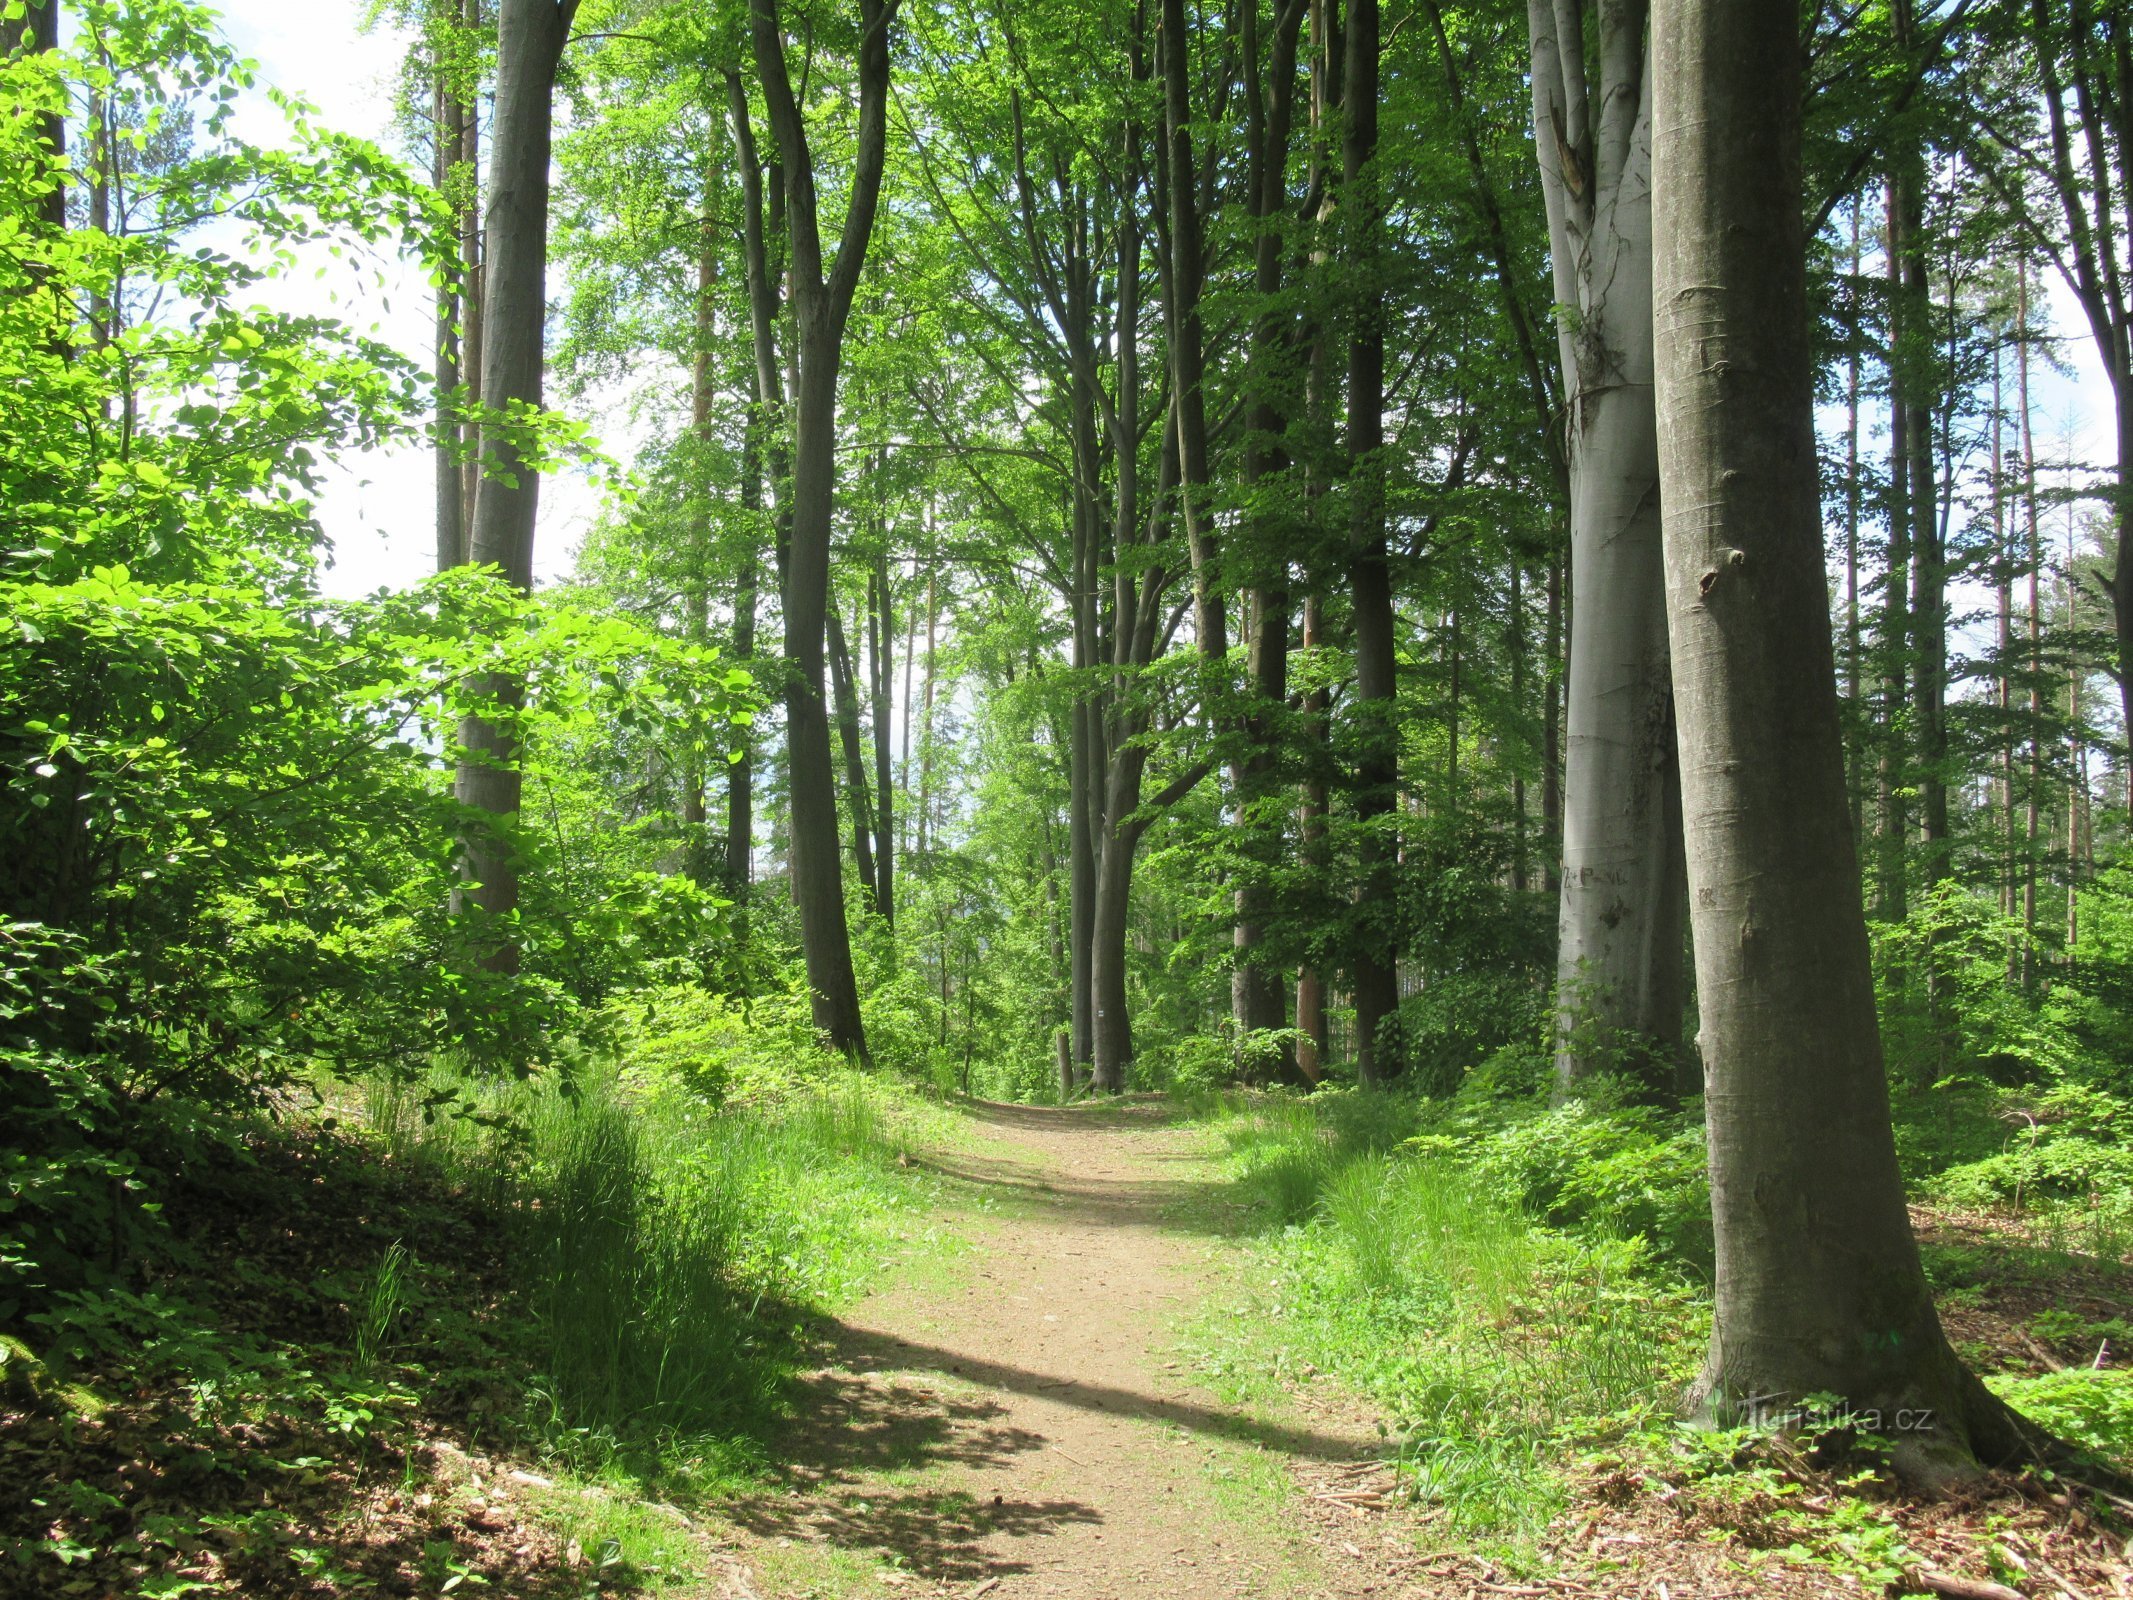 Tuyến đường chủ yếu dẫn qua các khu rừng rụng lá